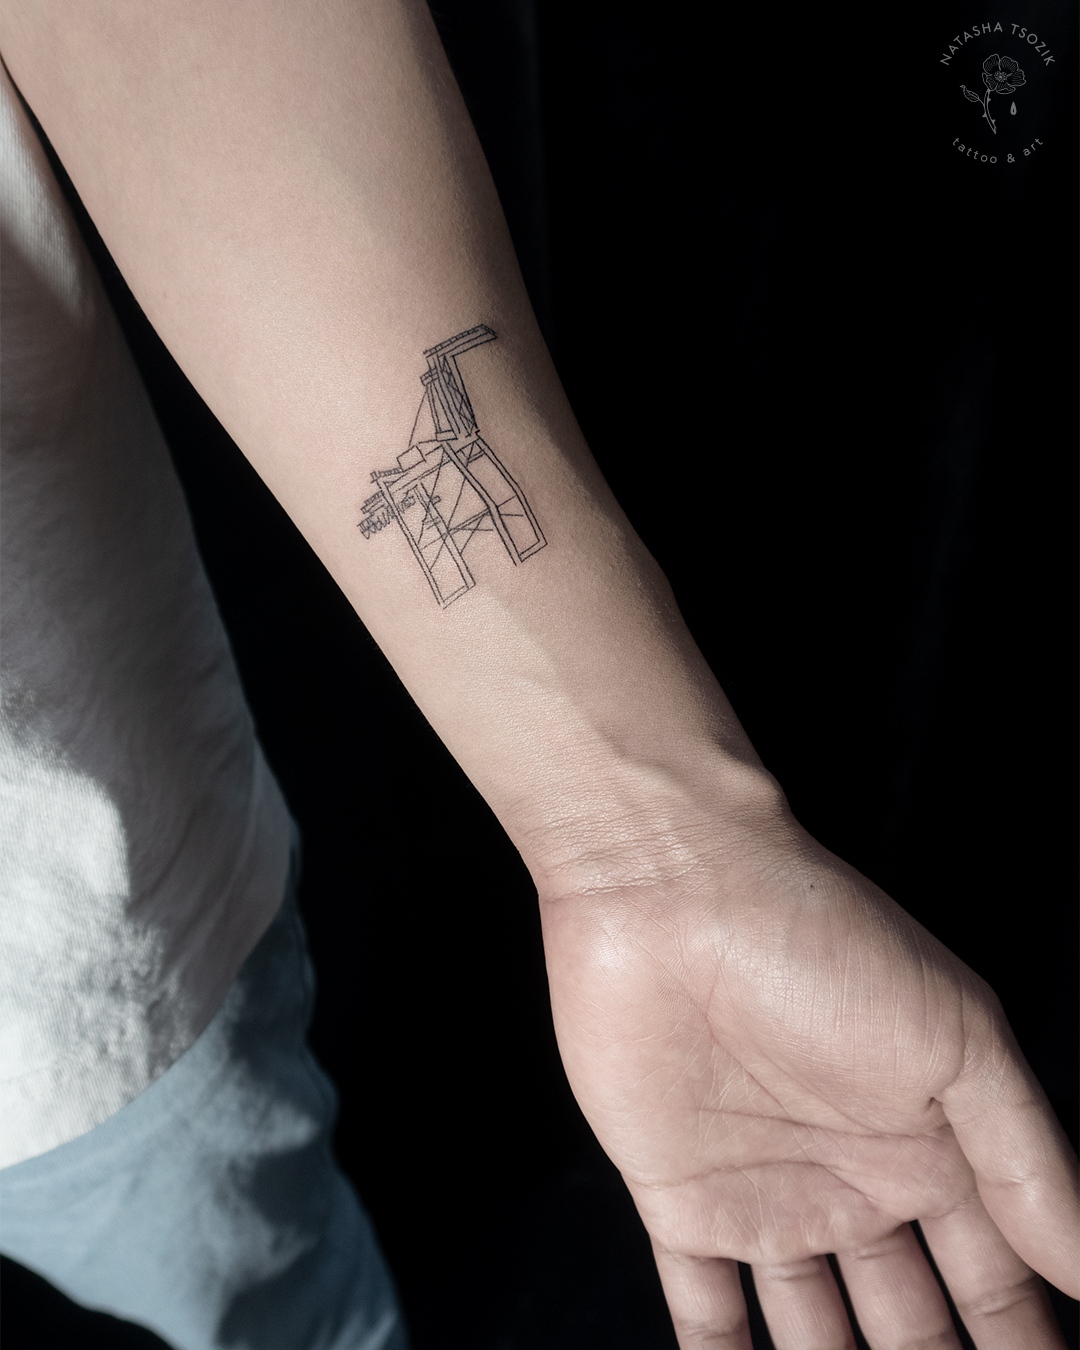 Matching Oakland Crane tattoo by Natasha Tsozik